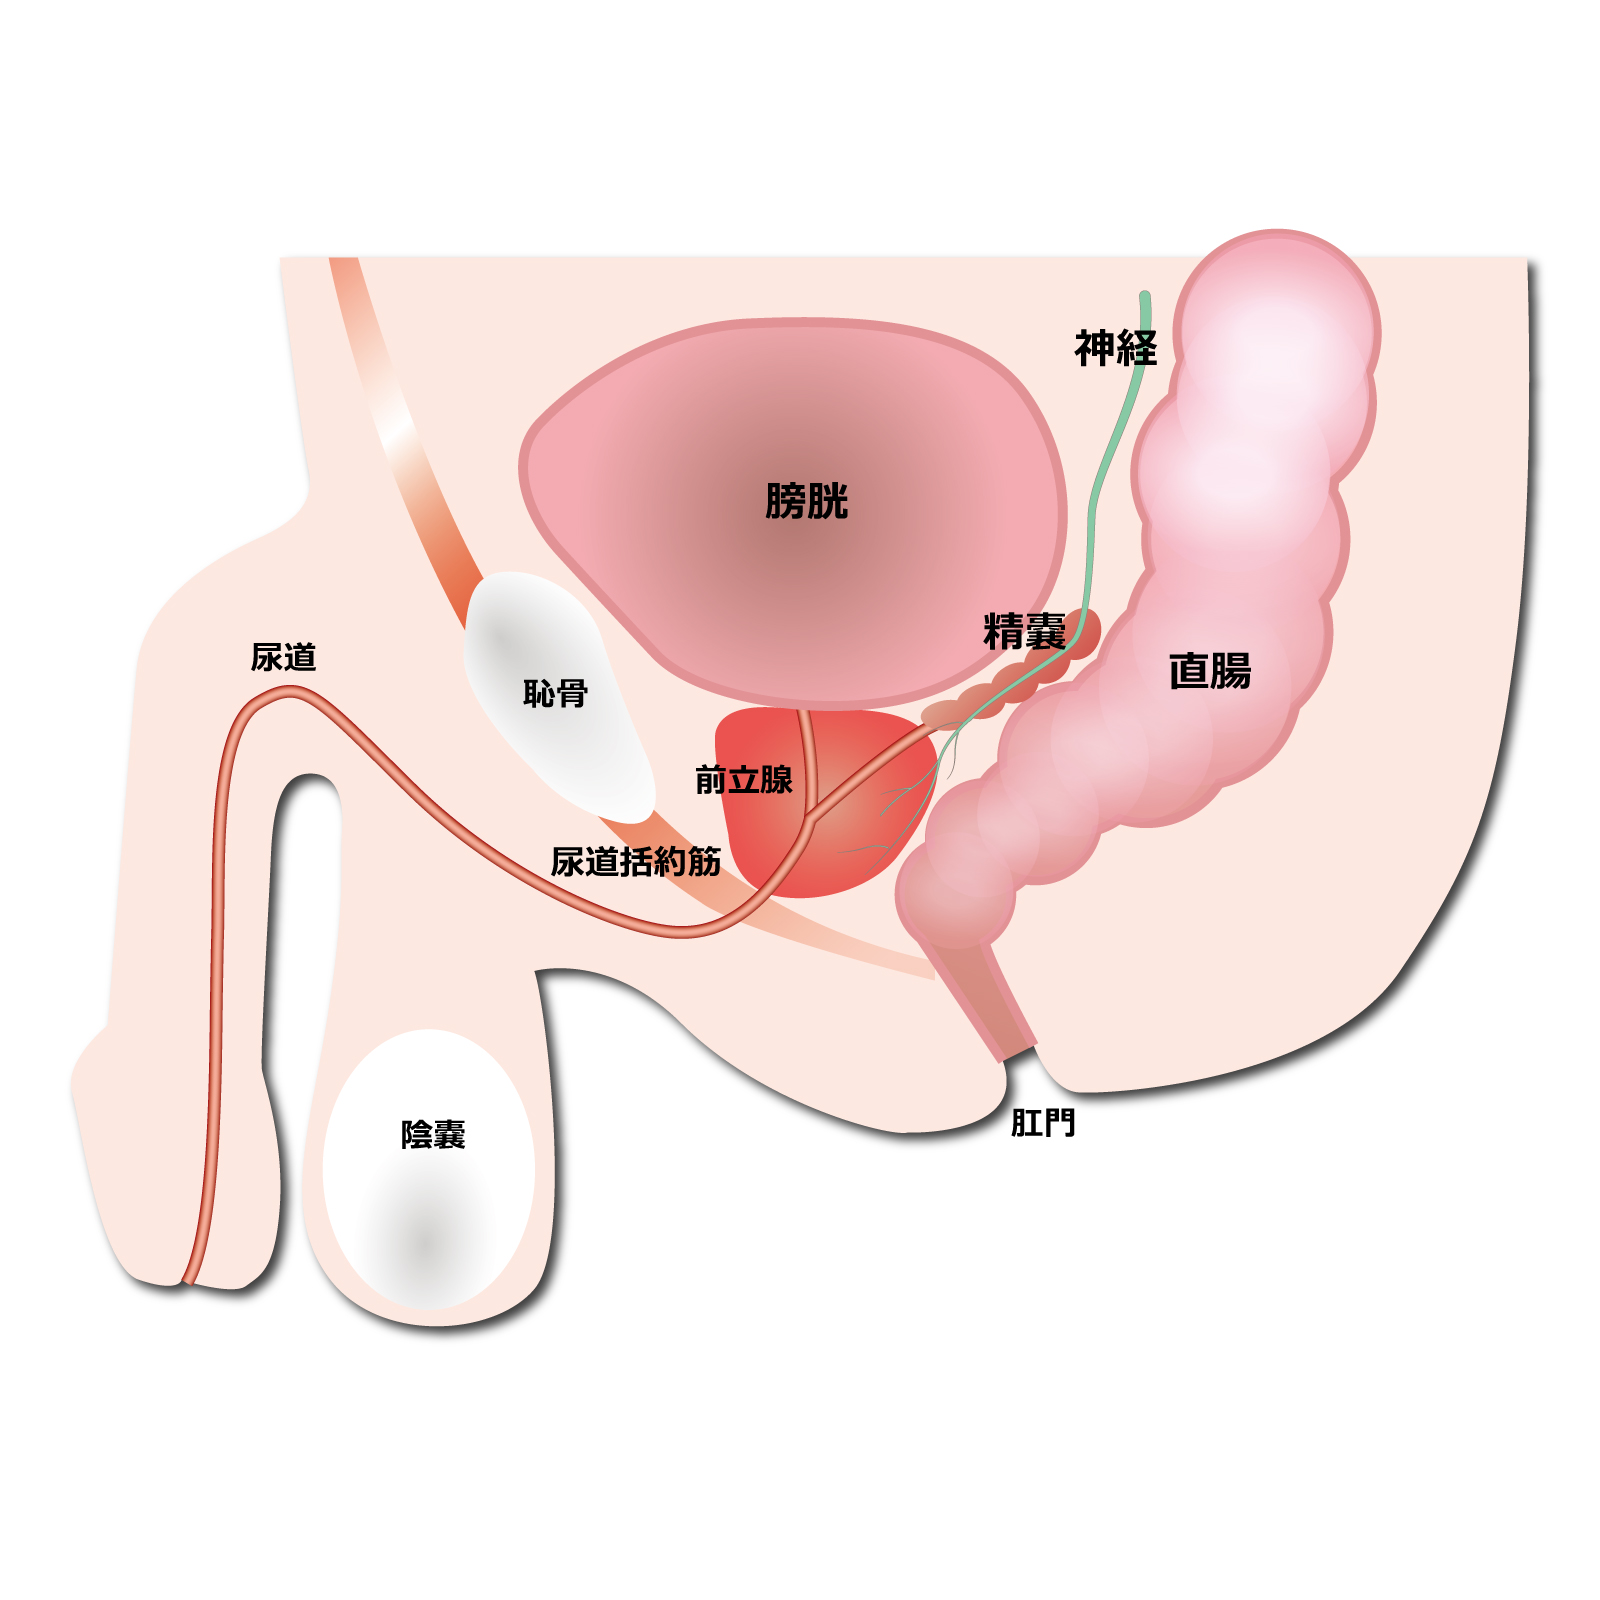 前立腺がん小線源治療後の射精は、前立腺がん小線源治療前の射精と変わらず